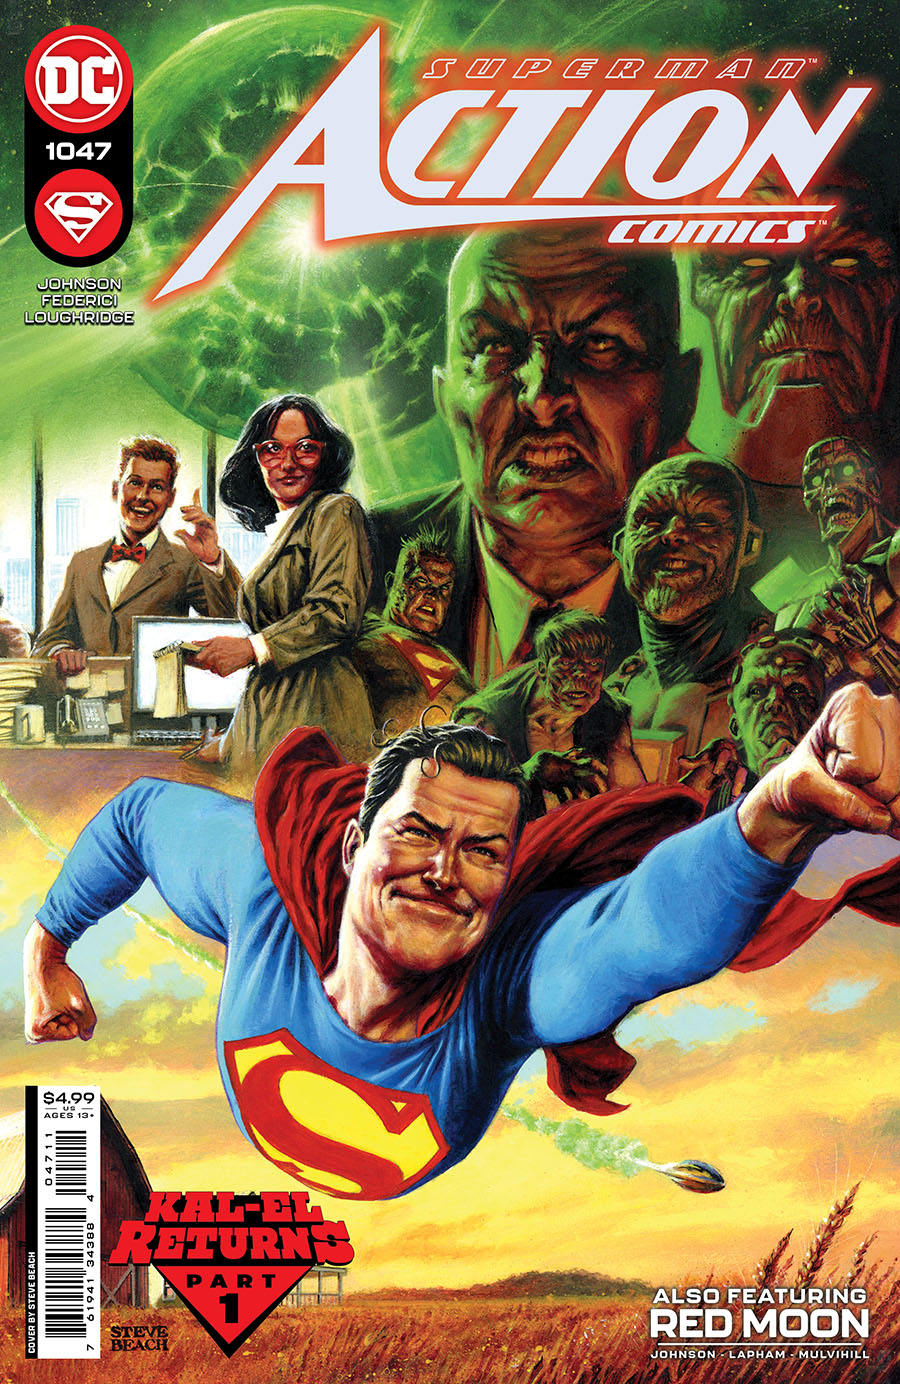 Action Comics Vol 2 #1047 Cover A Regular Steve Beach Cover (Kal-El Returns Part 1)